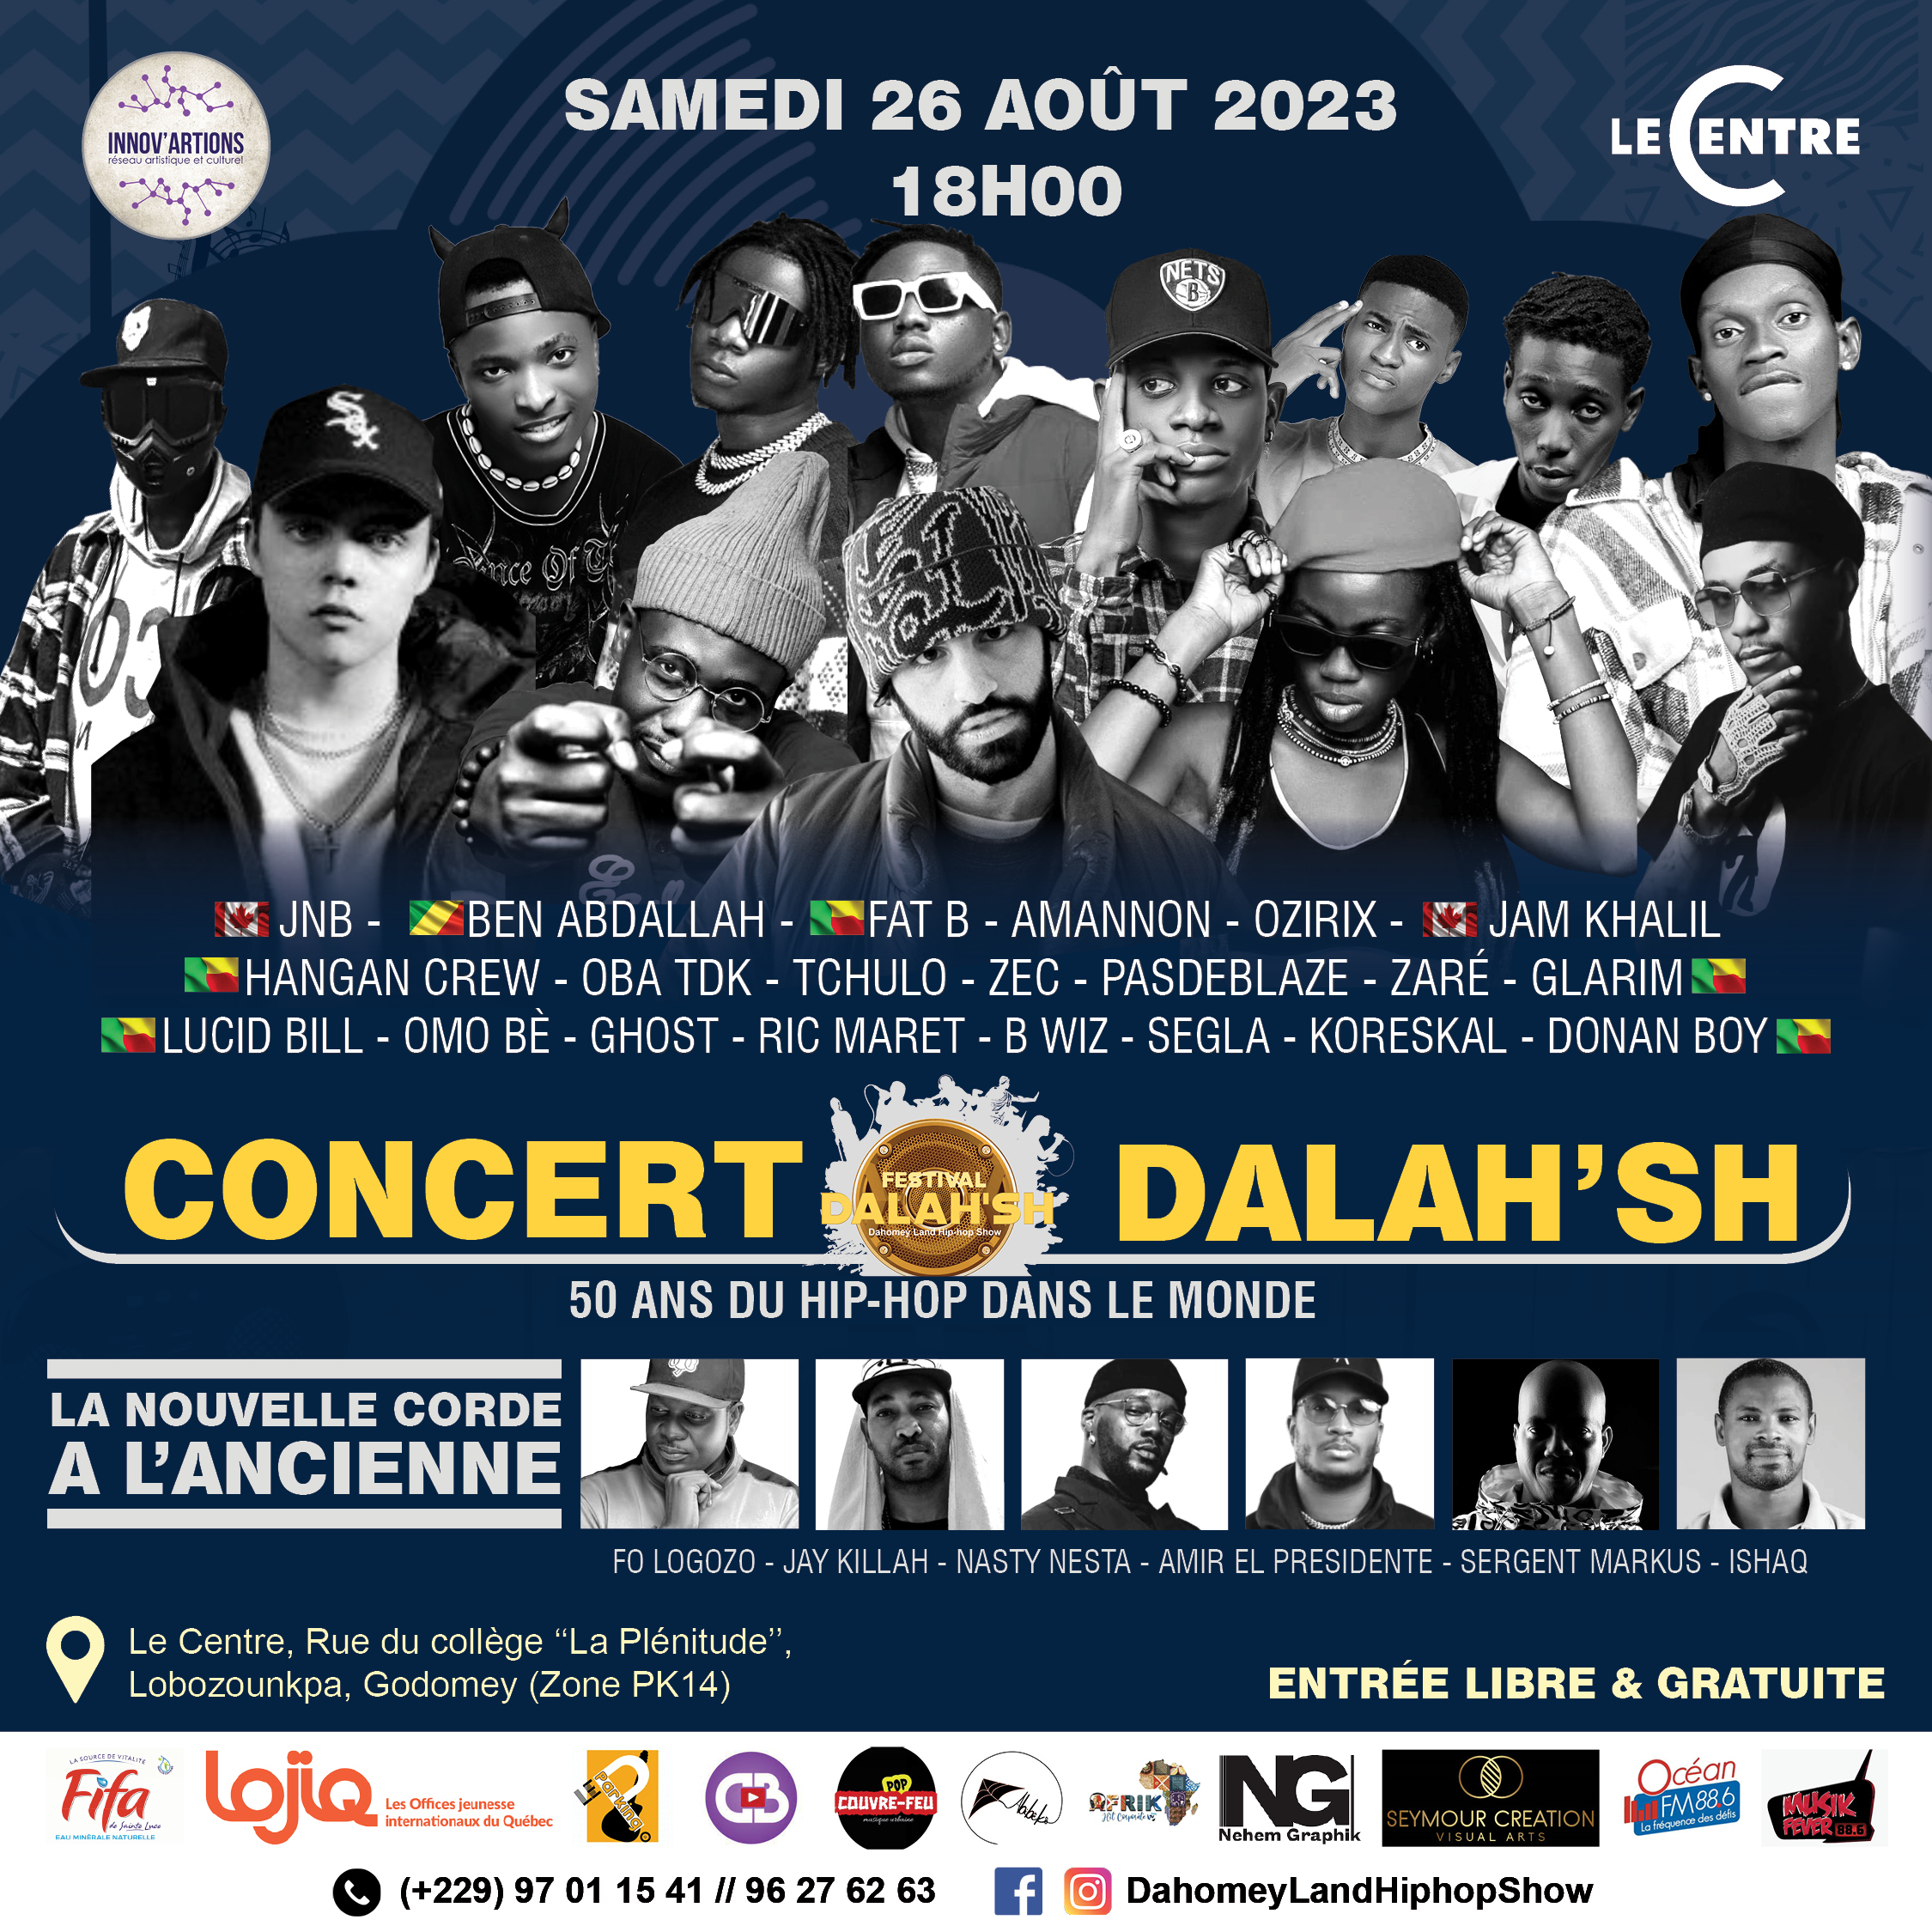 Festival Dalah'sh 8 | Concert